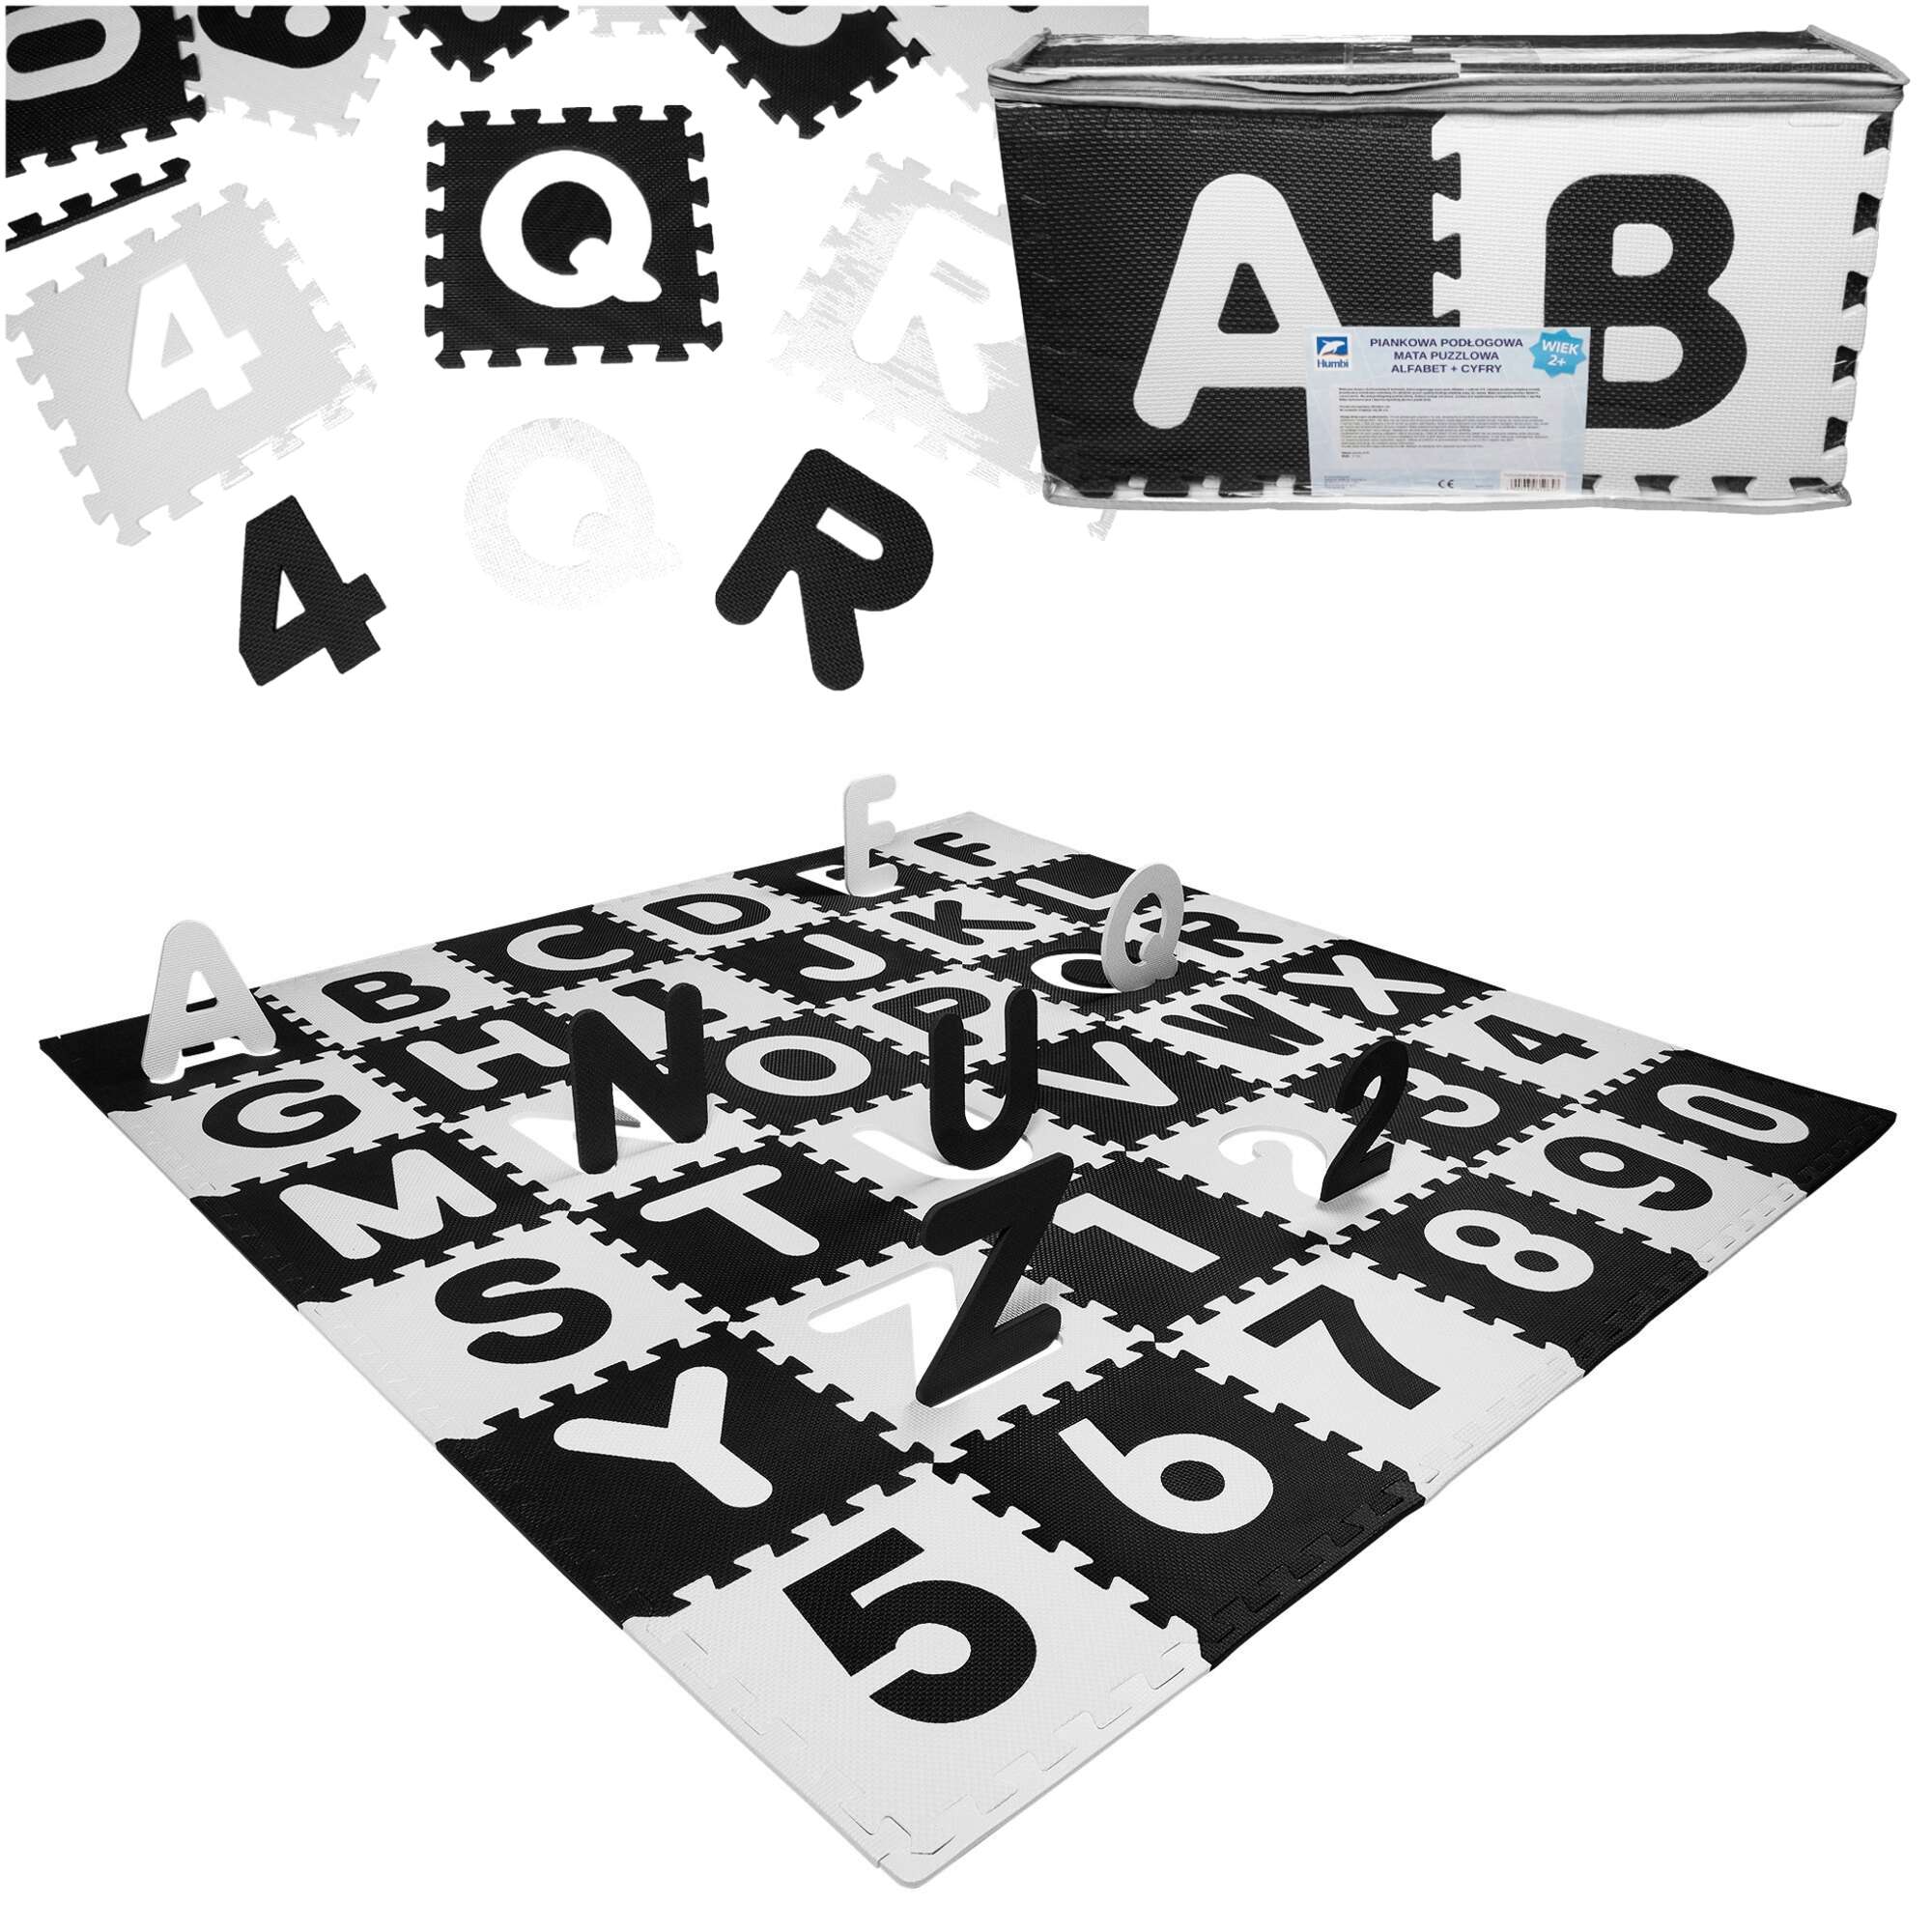 Humbi Mata edukacyjna Grube Puzzle piankowe 31,5 x 31,5 x 1 cm 96 elementw Cyfry Liczby Cyferki Litery Alfabet Literki biay czarny